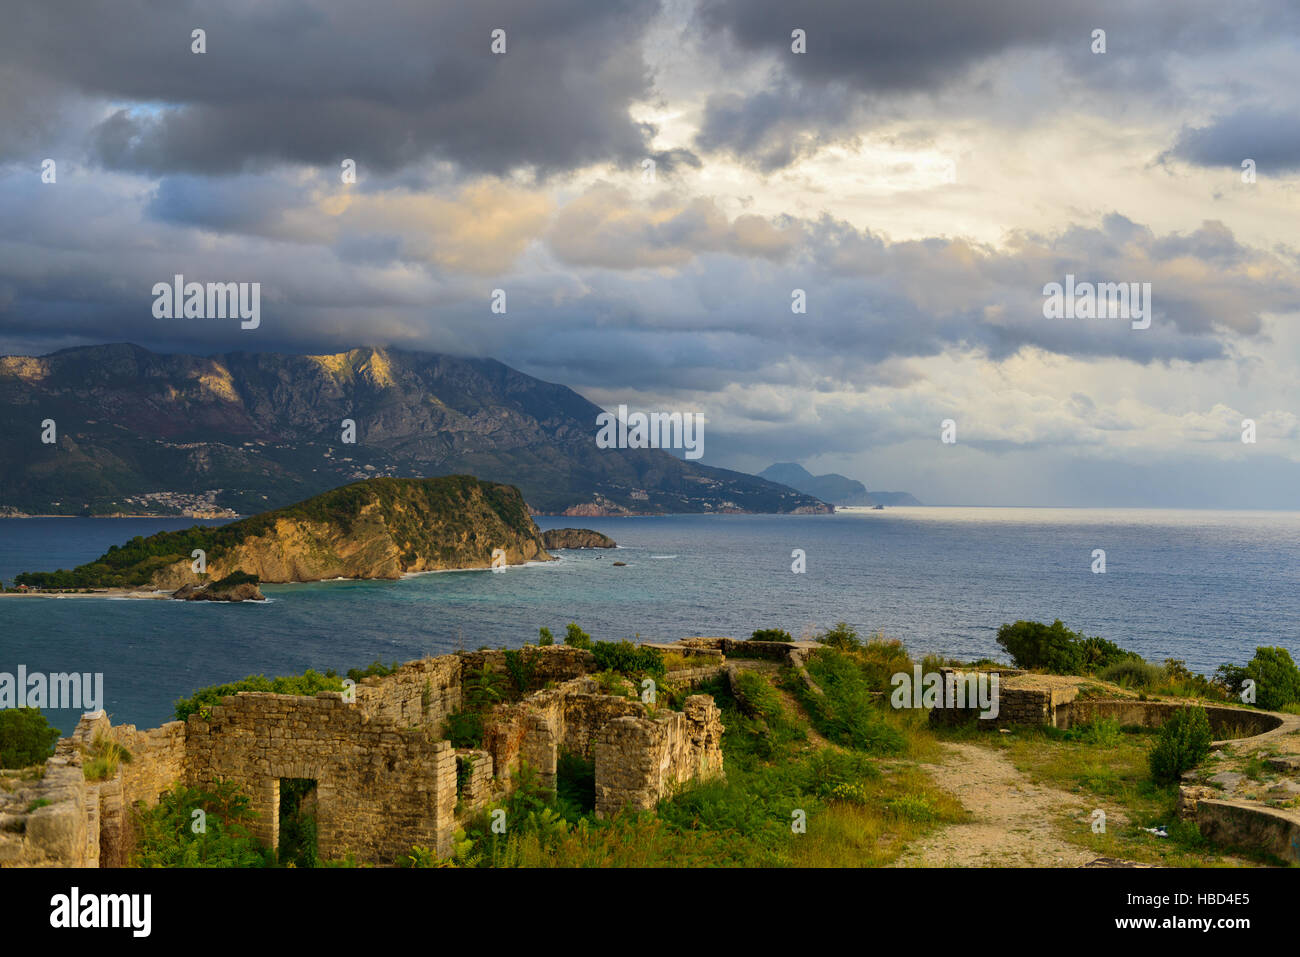 Blick auf Budva Bucht von Ruinen der mittelalterlichen Festung Tvrdava Mogren am Ufer der Adria. Historische Sehenswürdigkeiten von Budva, Montenegro Stockfoto